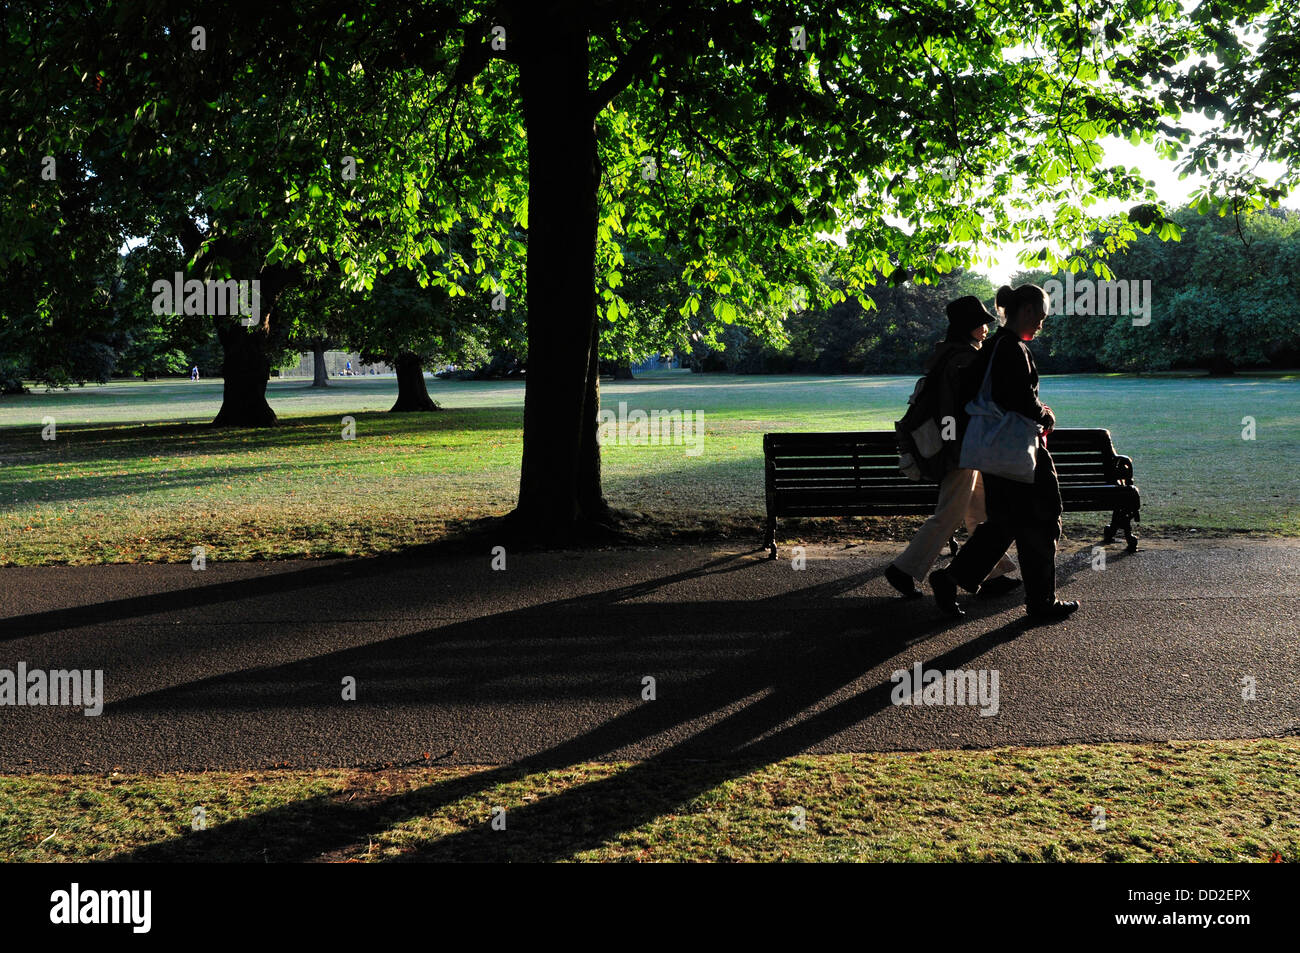 Two women walk in Greenwich Park, London, UK Stock Photo